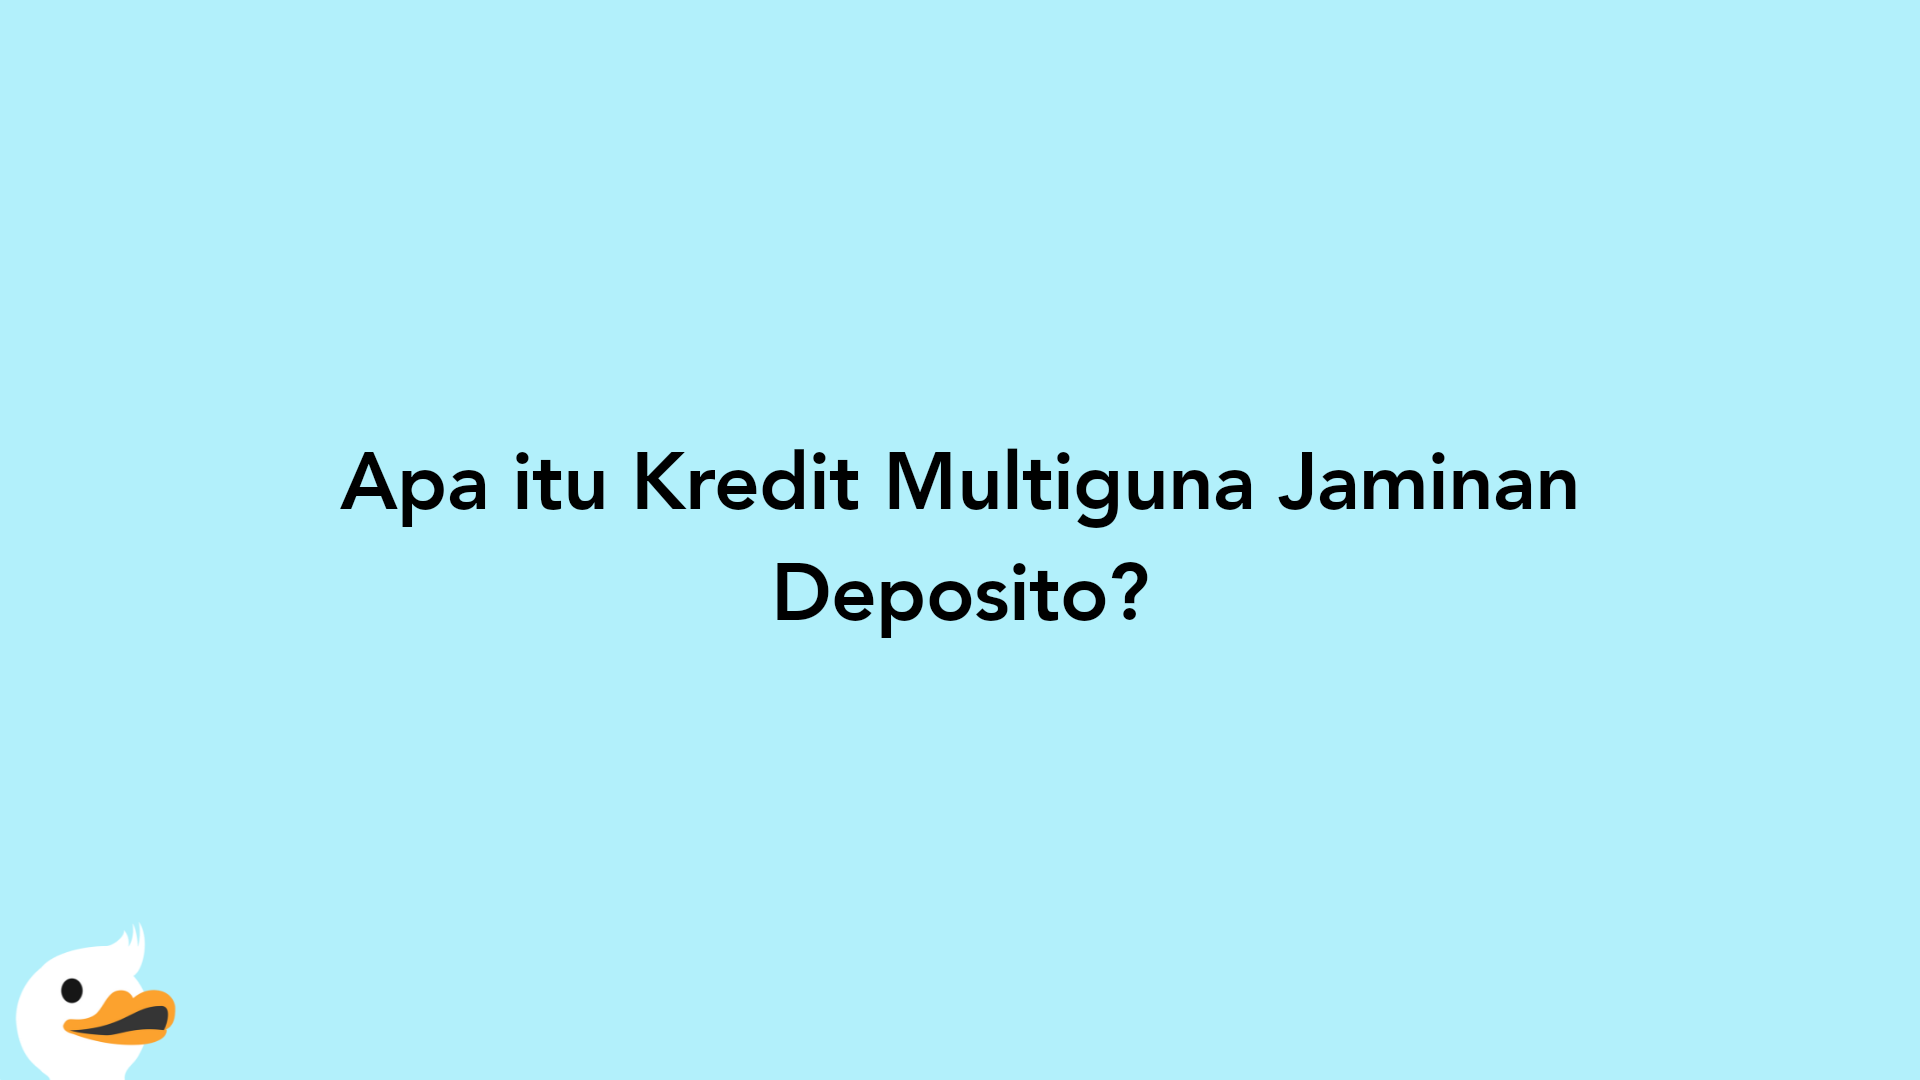 Apa itu Kredit Multiguna Jaminan Deposito?